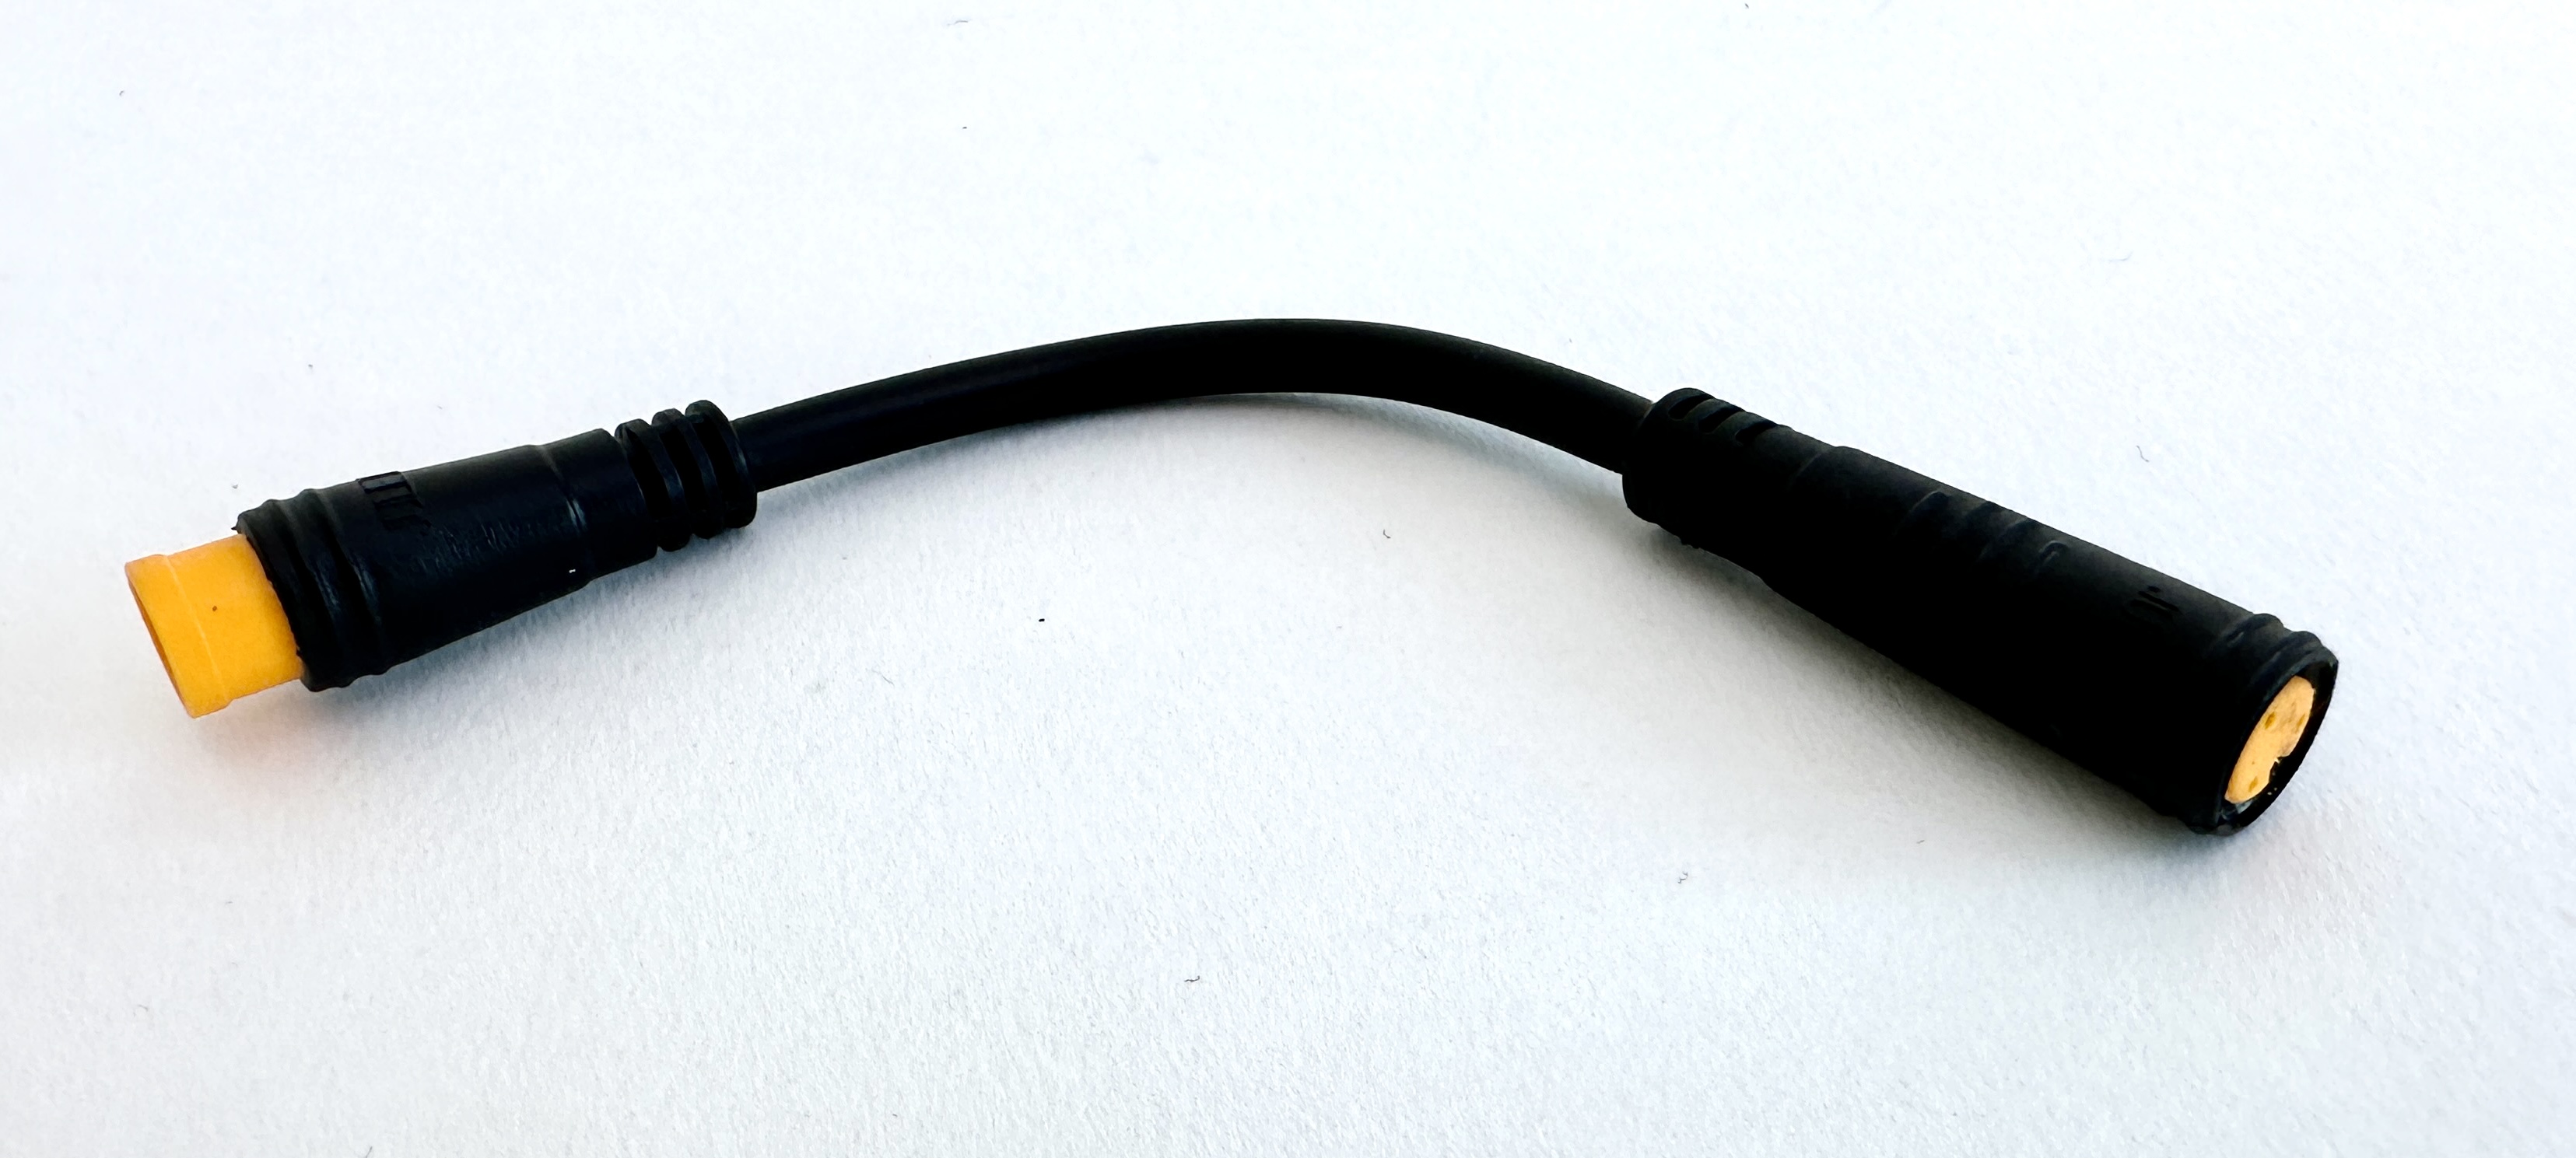 HIGO / Julet cable de extensión de 5,5 cm para ebike, 2 PIN hembra a macho, amarillo